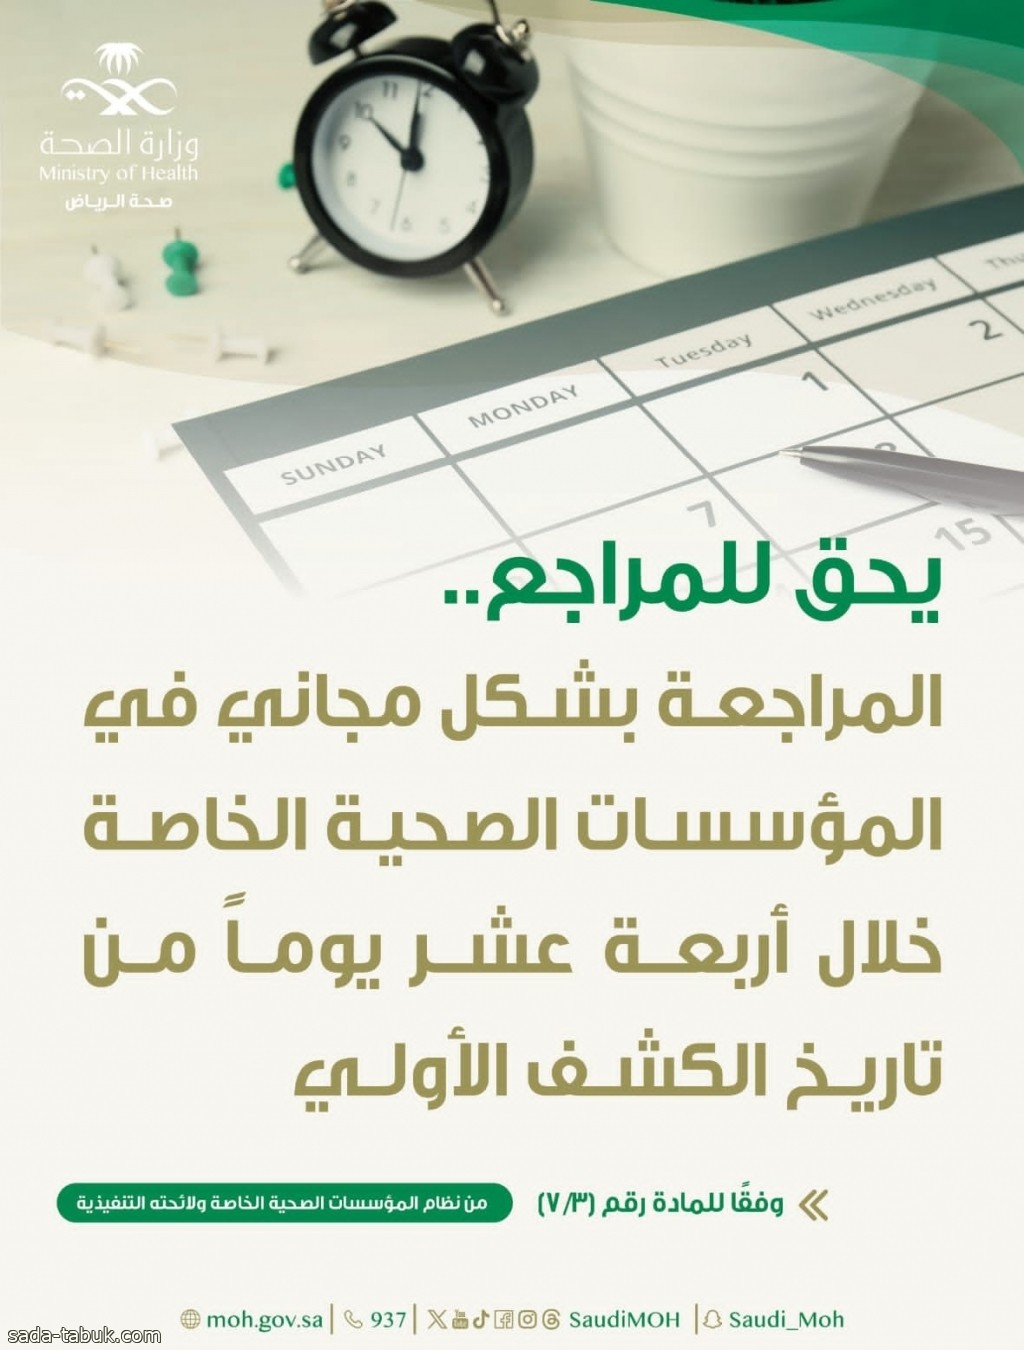 "صحة الرياض": يحق للمرضى المراجعة دون مقابل خلال 14 يوماً